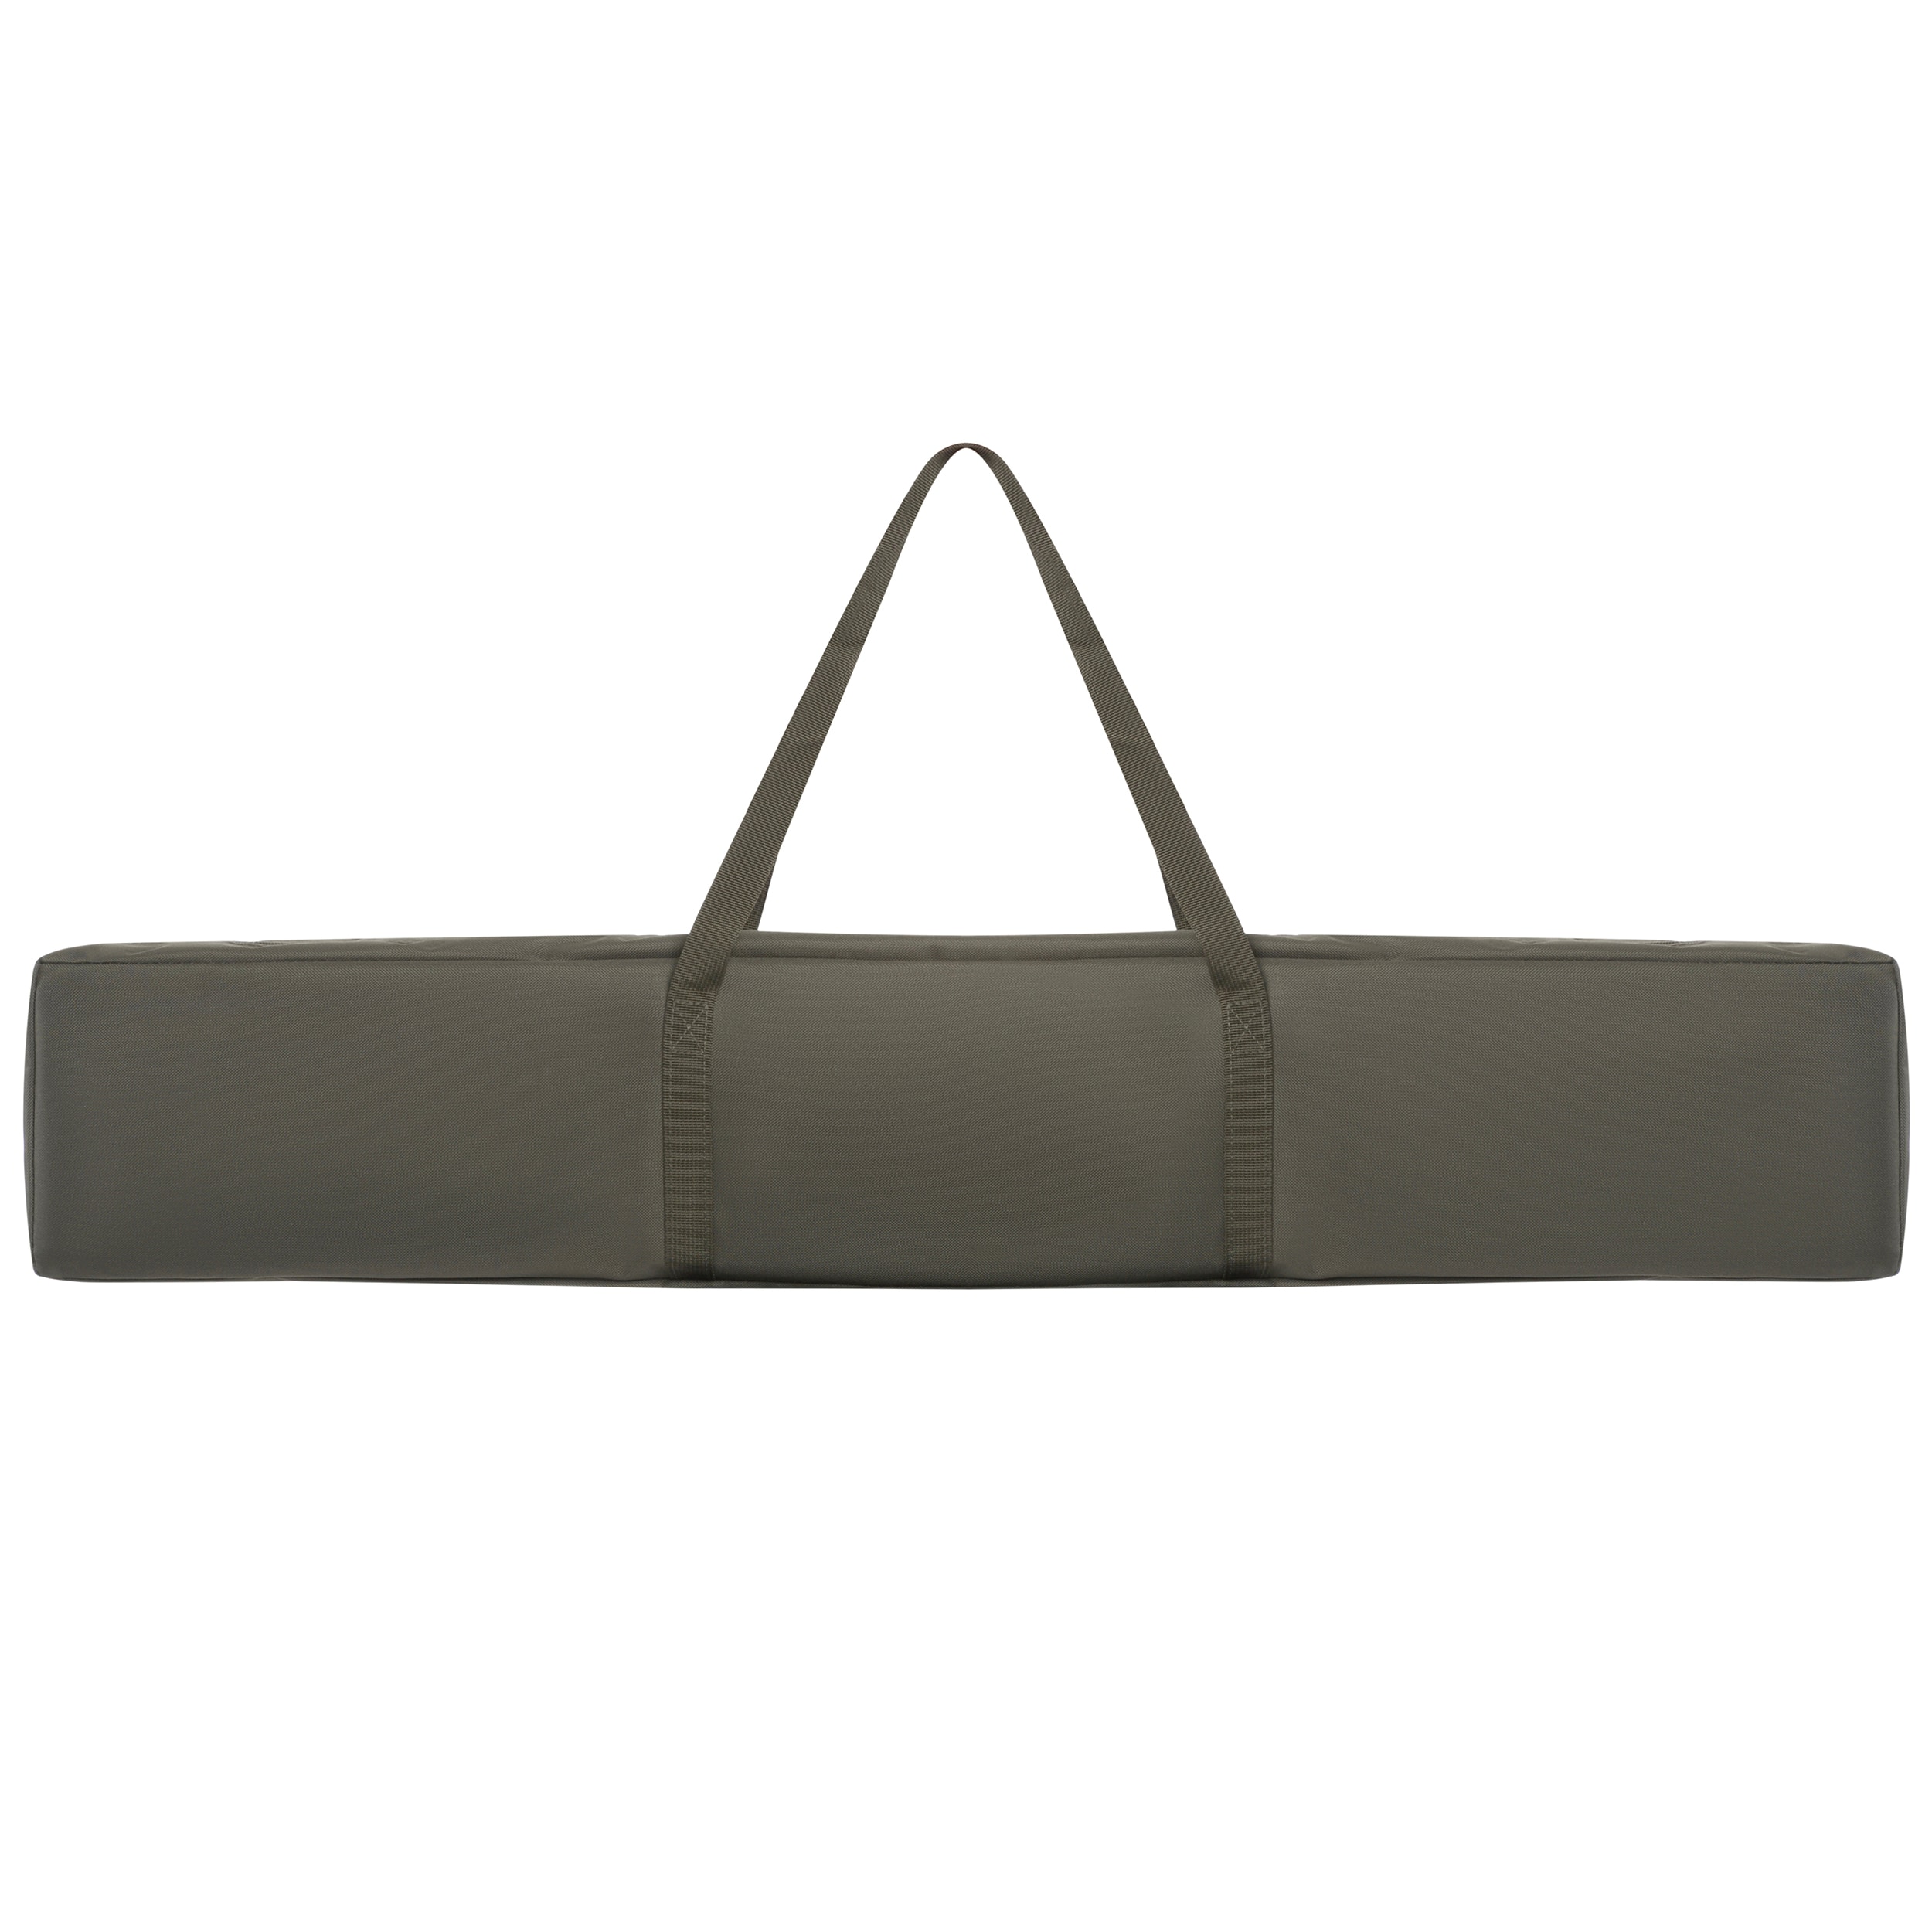 Розкладне польове ліжко Mil-Tec US Style Olive - 210 x 70 см